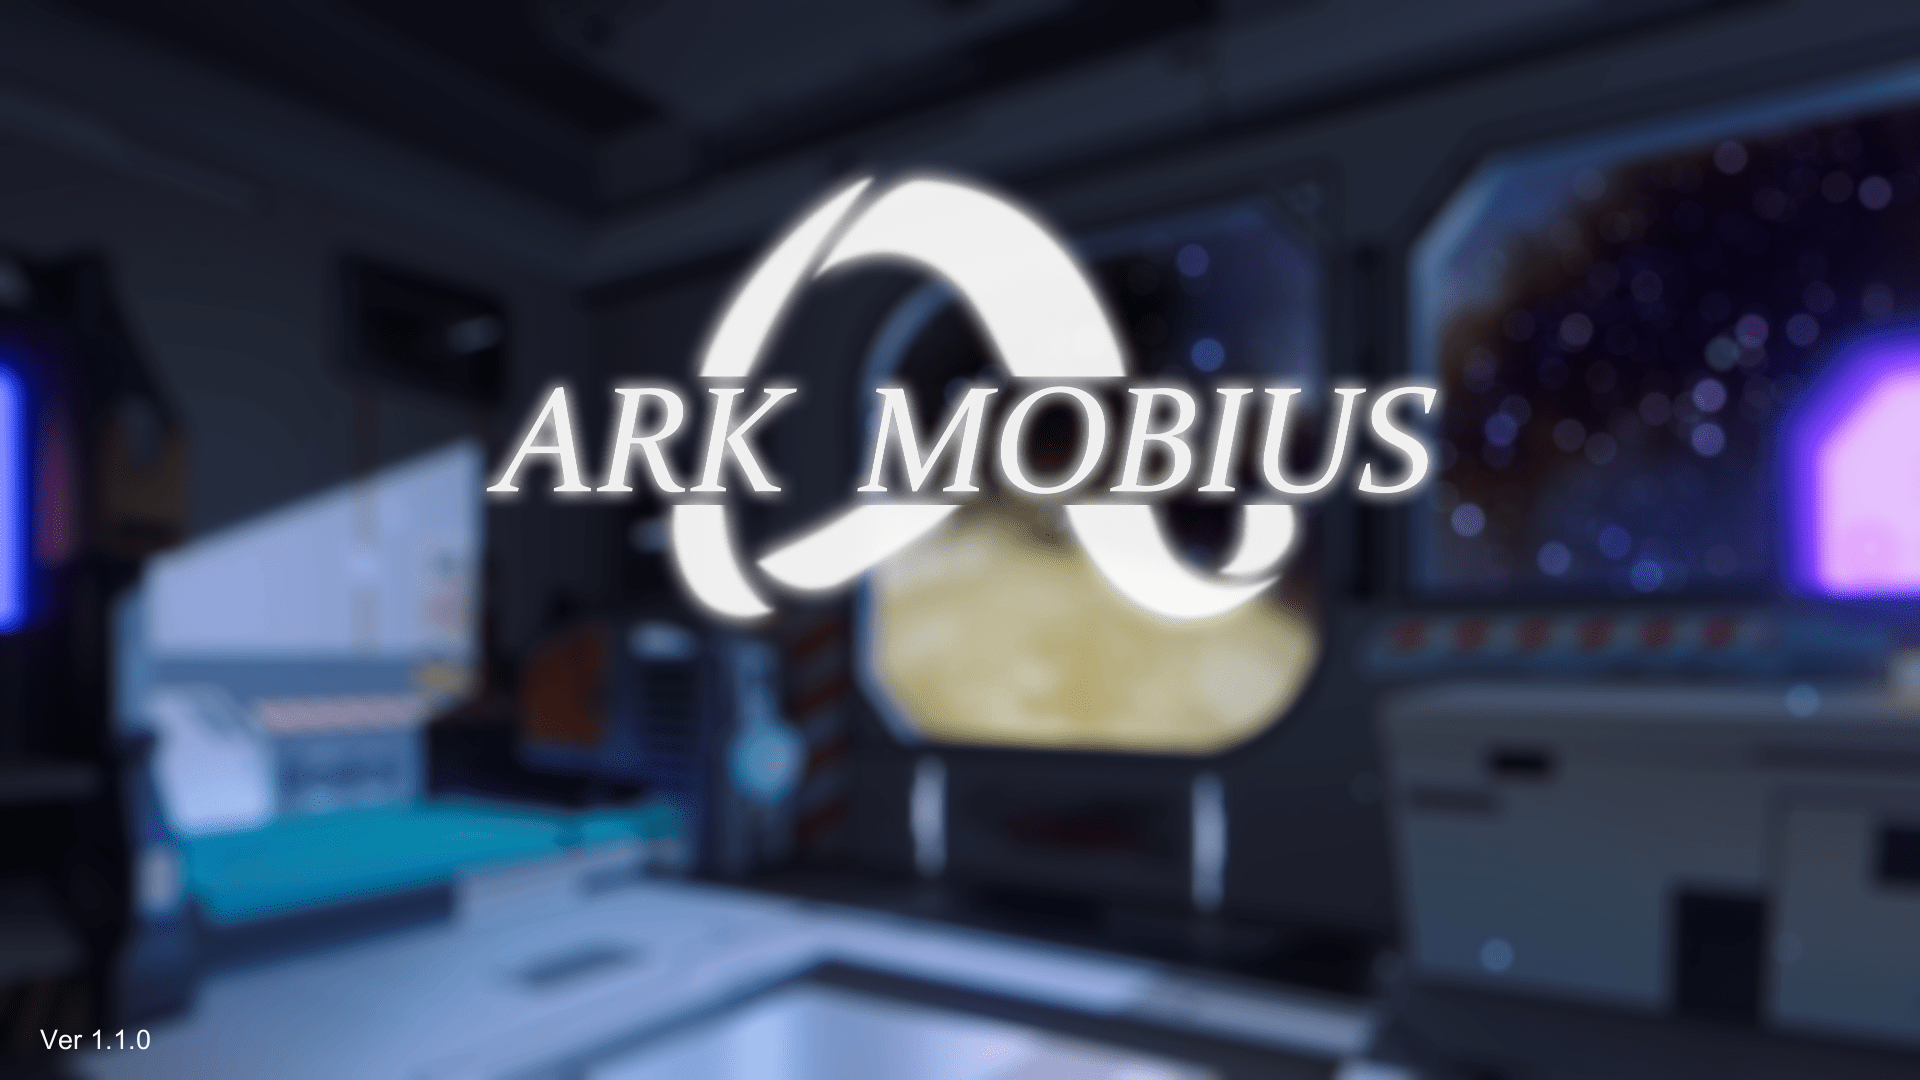 Ark Mobius title